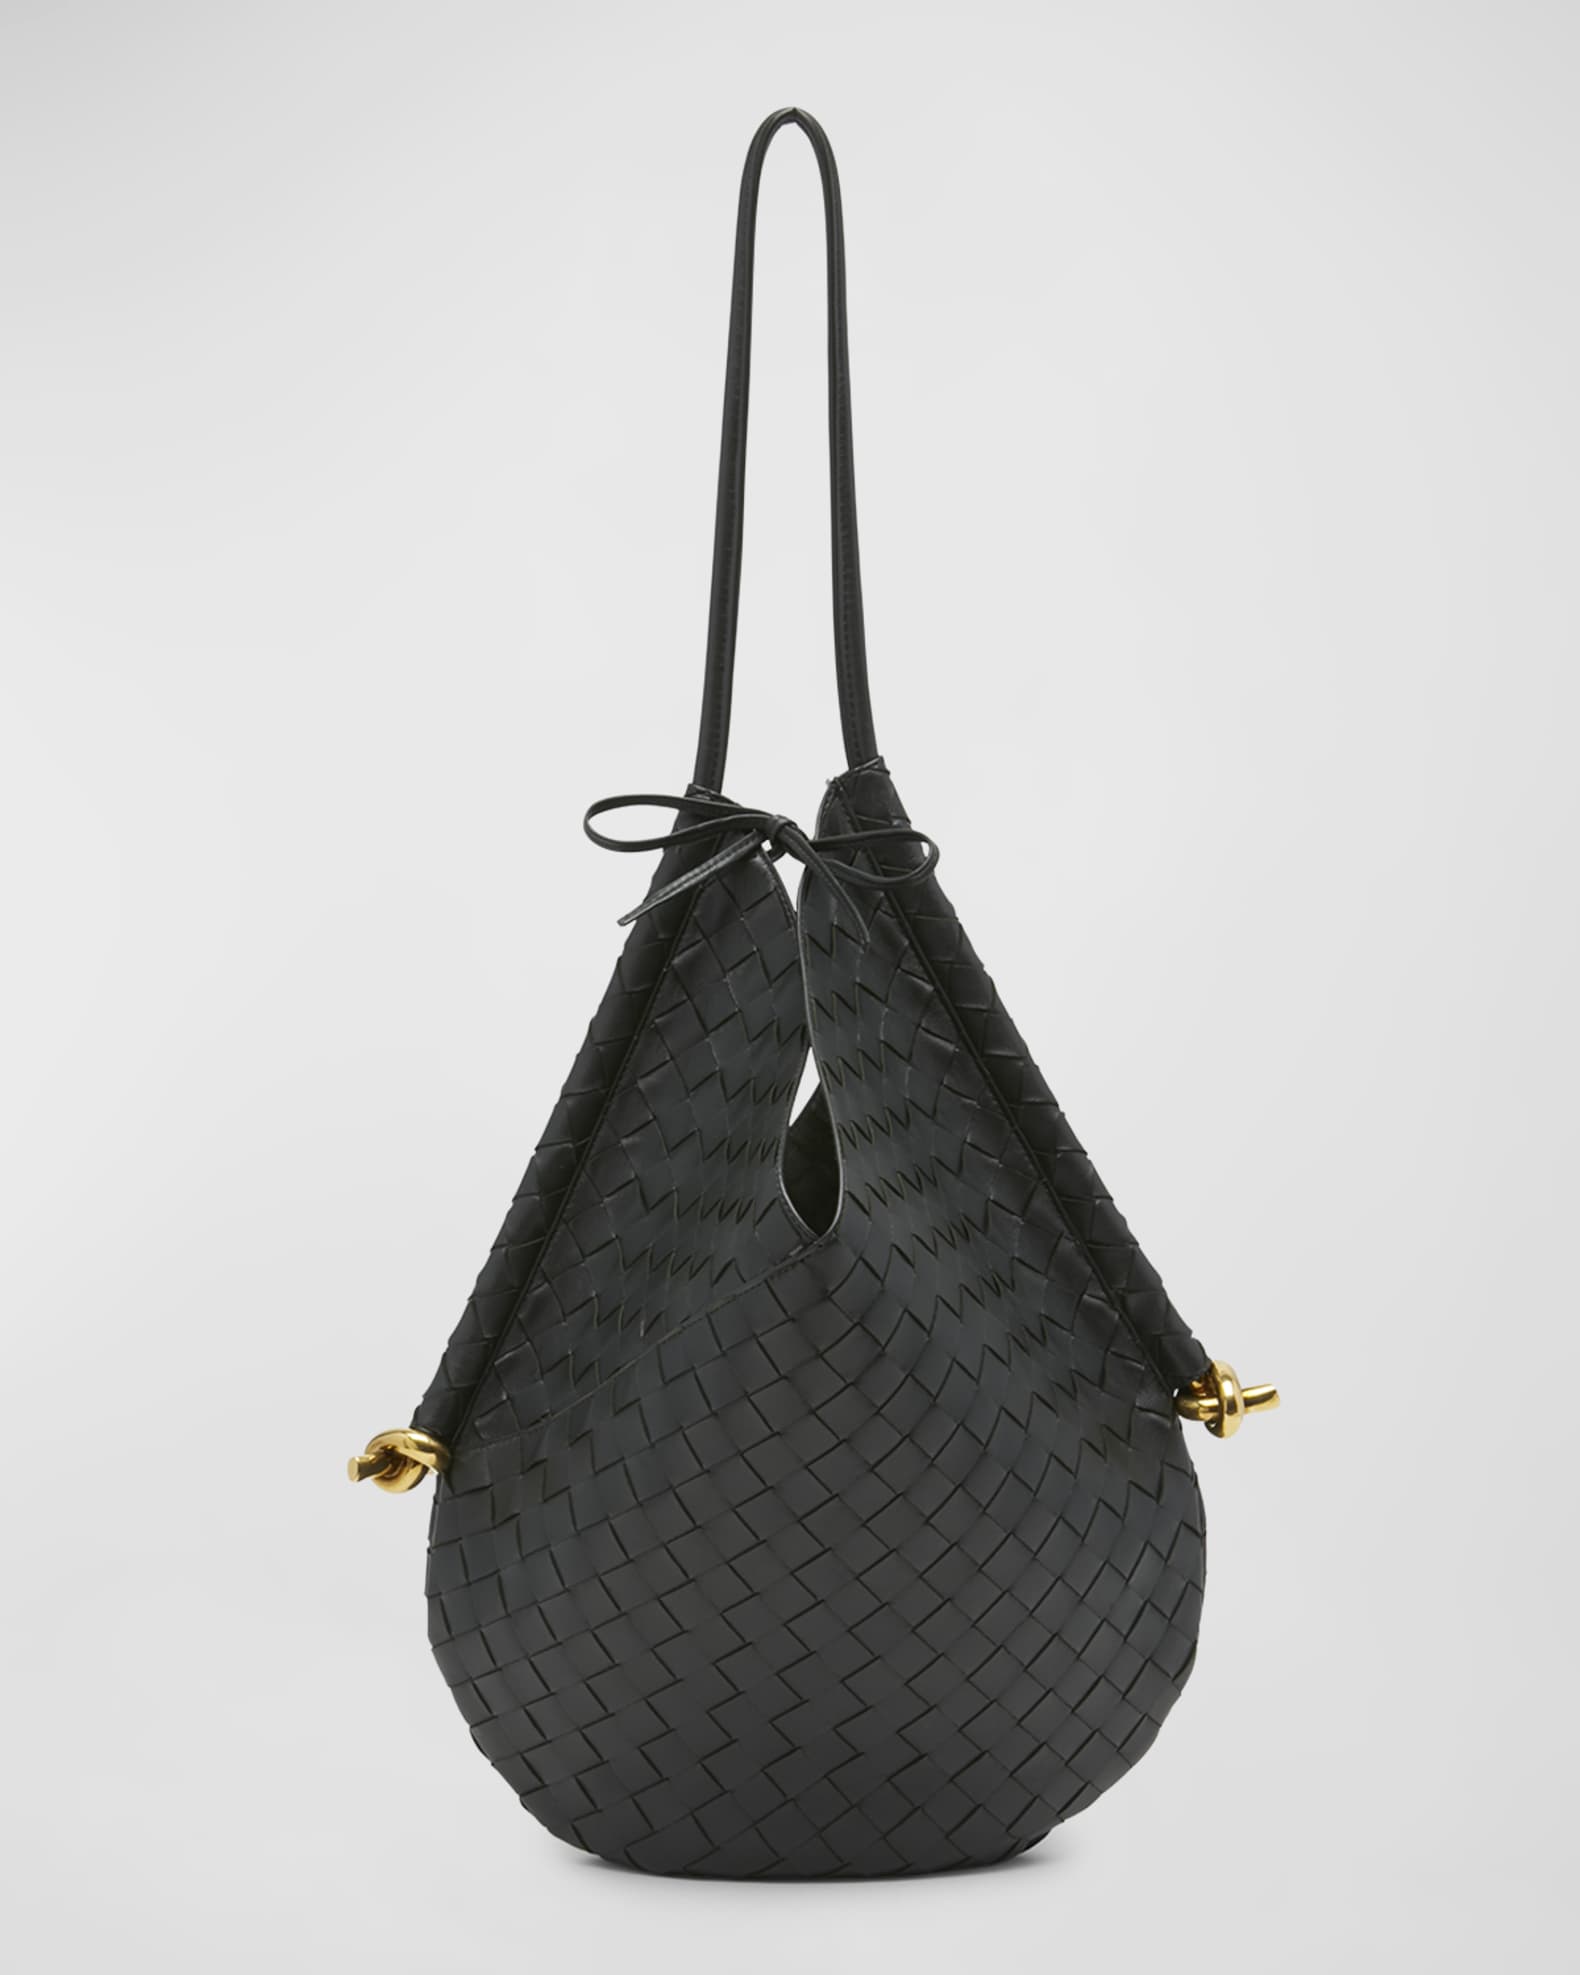 Bottega Veneta Hop Small Shoulder Bag - Black/Gold